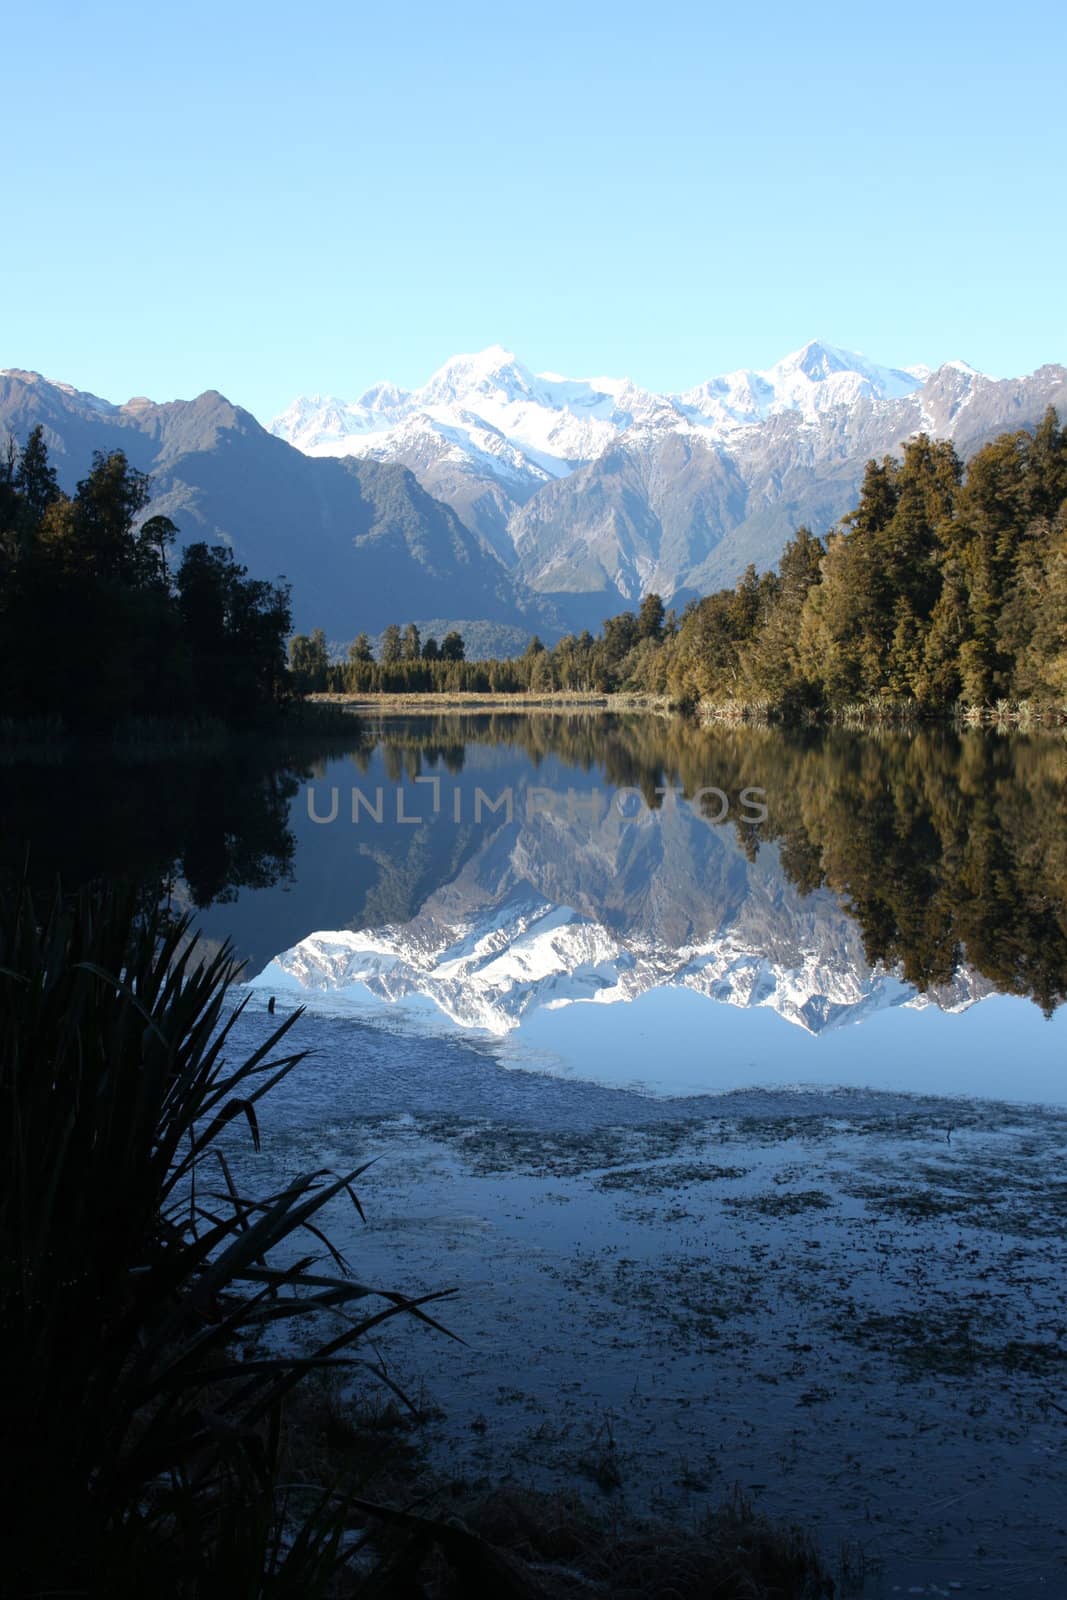 Beautiful Lake Matheson in New Zealand